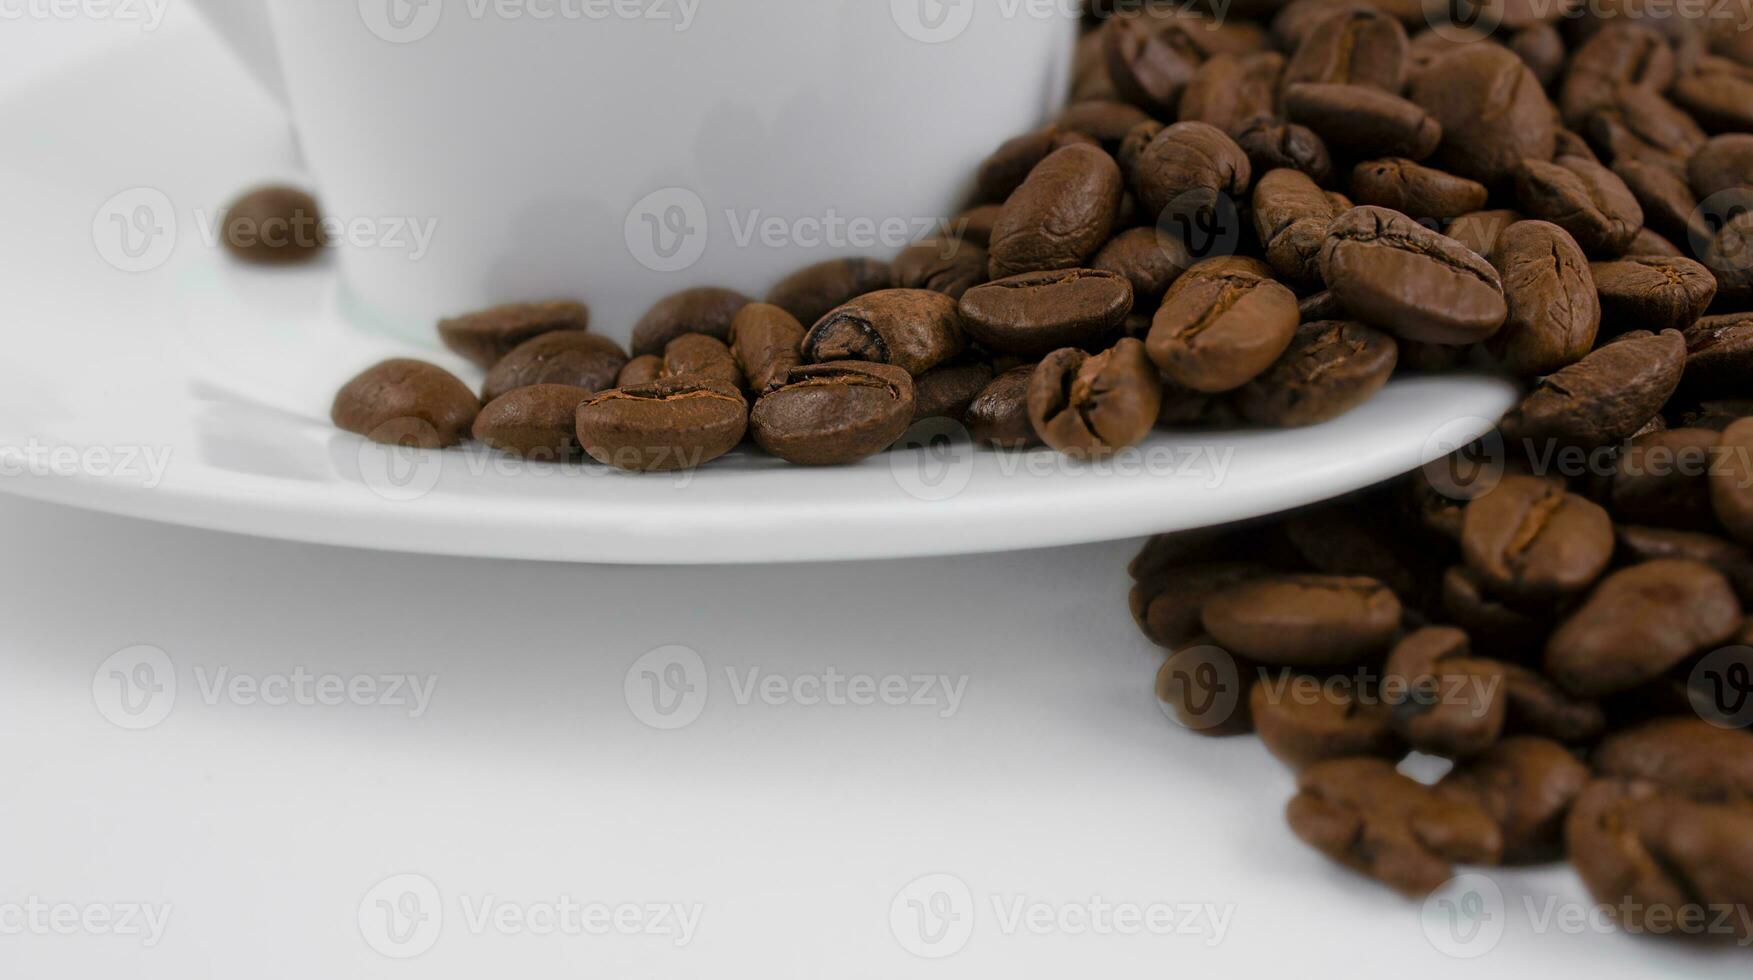 en kopp av kaffe och kaffe bönor på en vit bakgrund. rostad kaffe bönor på en vit fat, stänga upp. foto